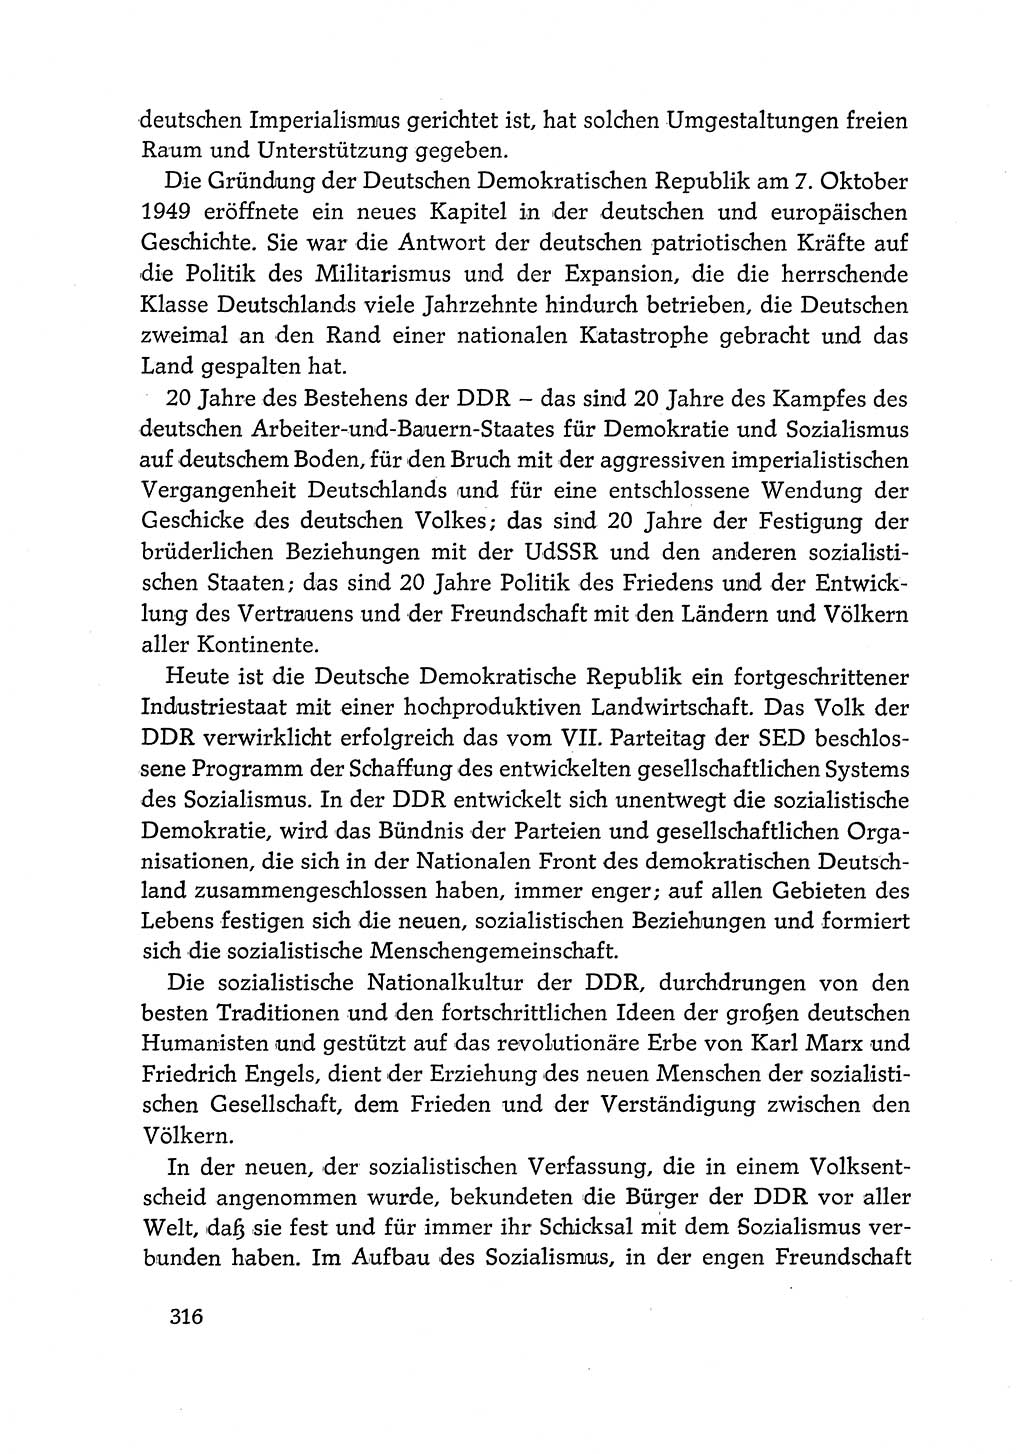 Dokumente der Sozialistischen Einheitspartei Deutschlands (SED) [Deutsche Demokratische Republik (DDR)] 1968-1969, Seite 316 (Dok. SED DDR 1968-1969, S. 316)